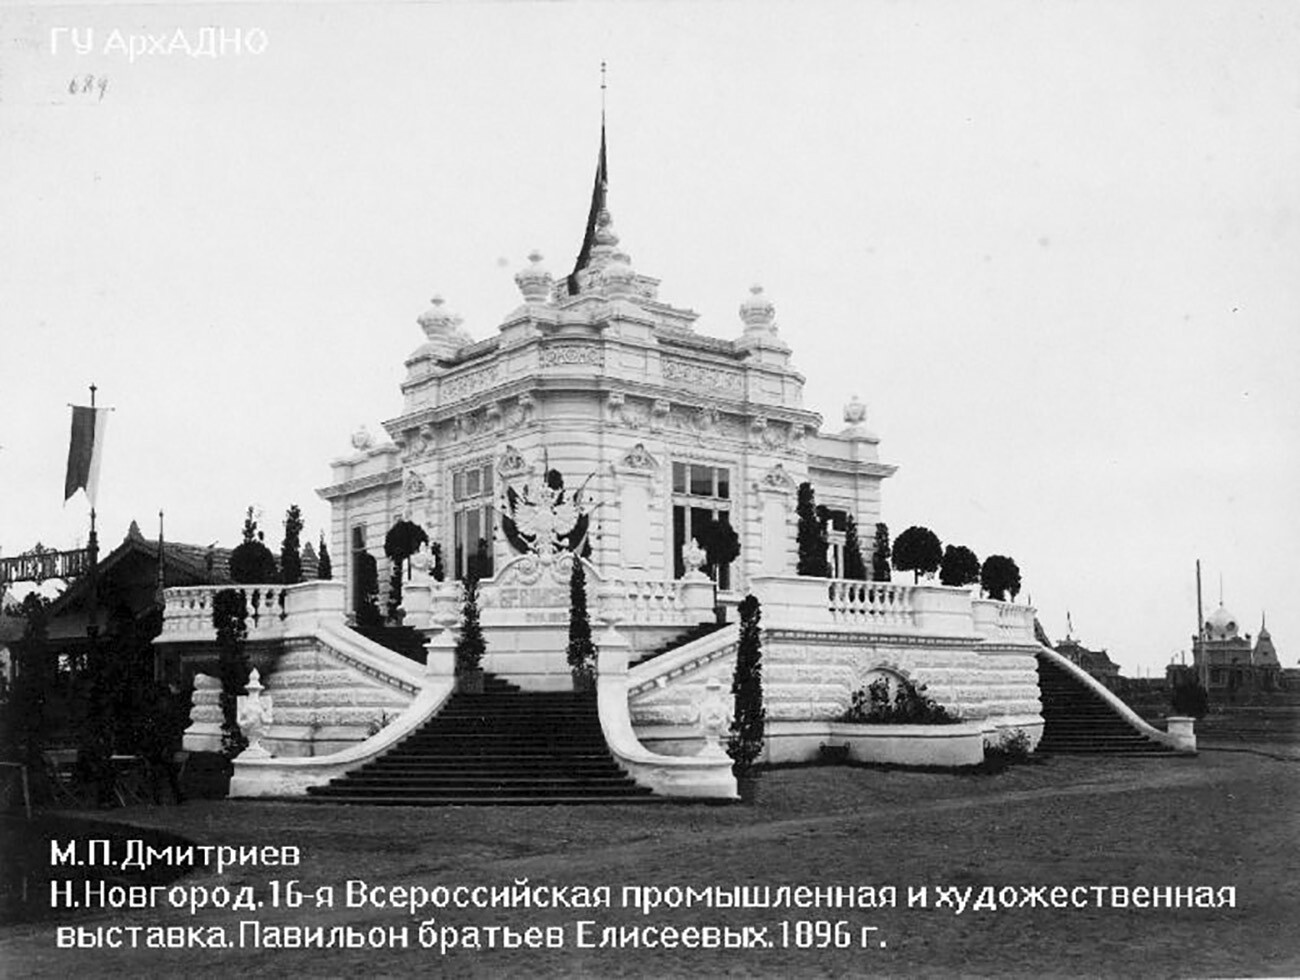 XVI. Vseruski industrijski in umetniški sejem v Nižnem Novgorodu, paviljon bratov Elisejevih 